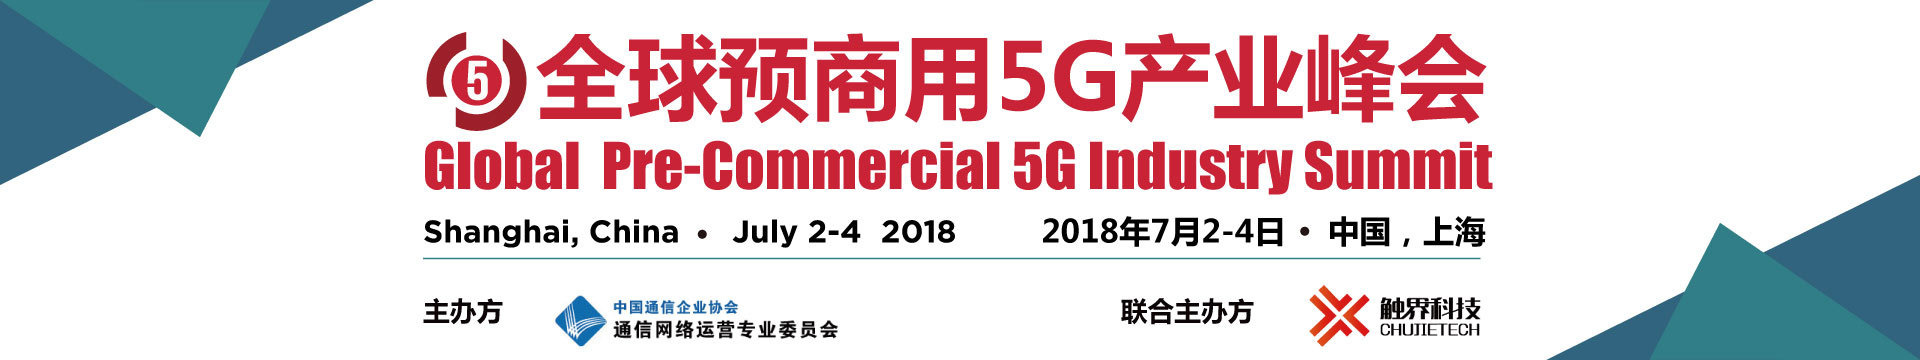 2018第三届全球预商用5G产业峰会